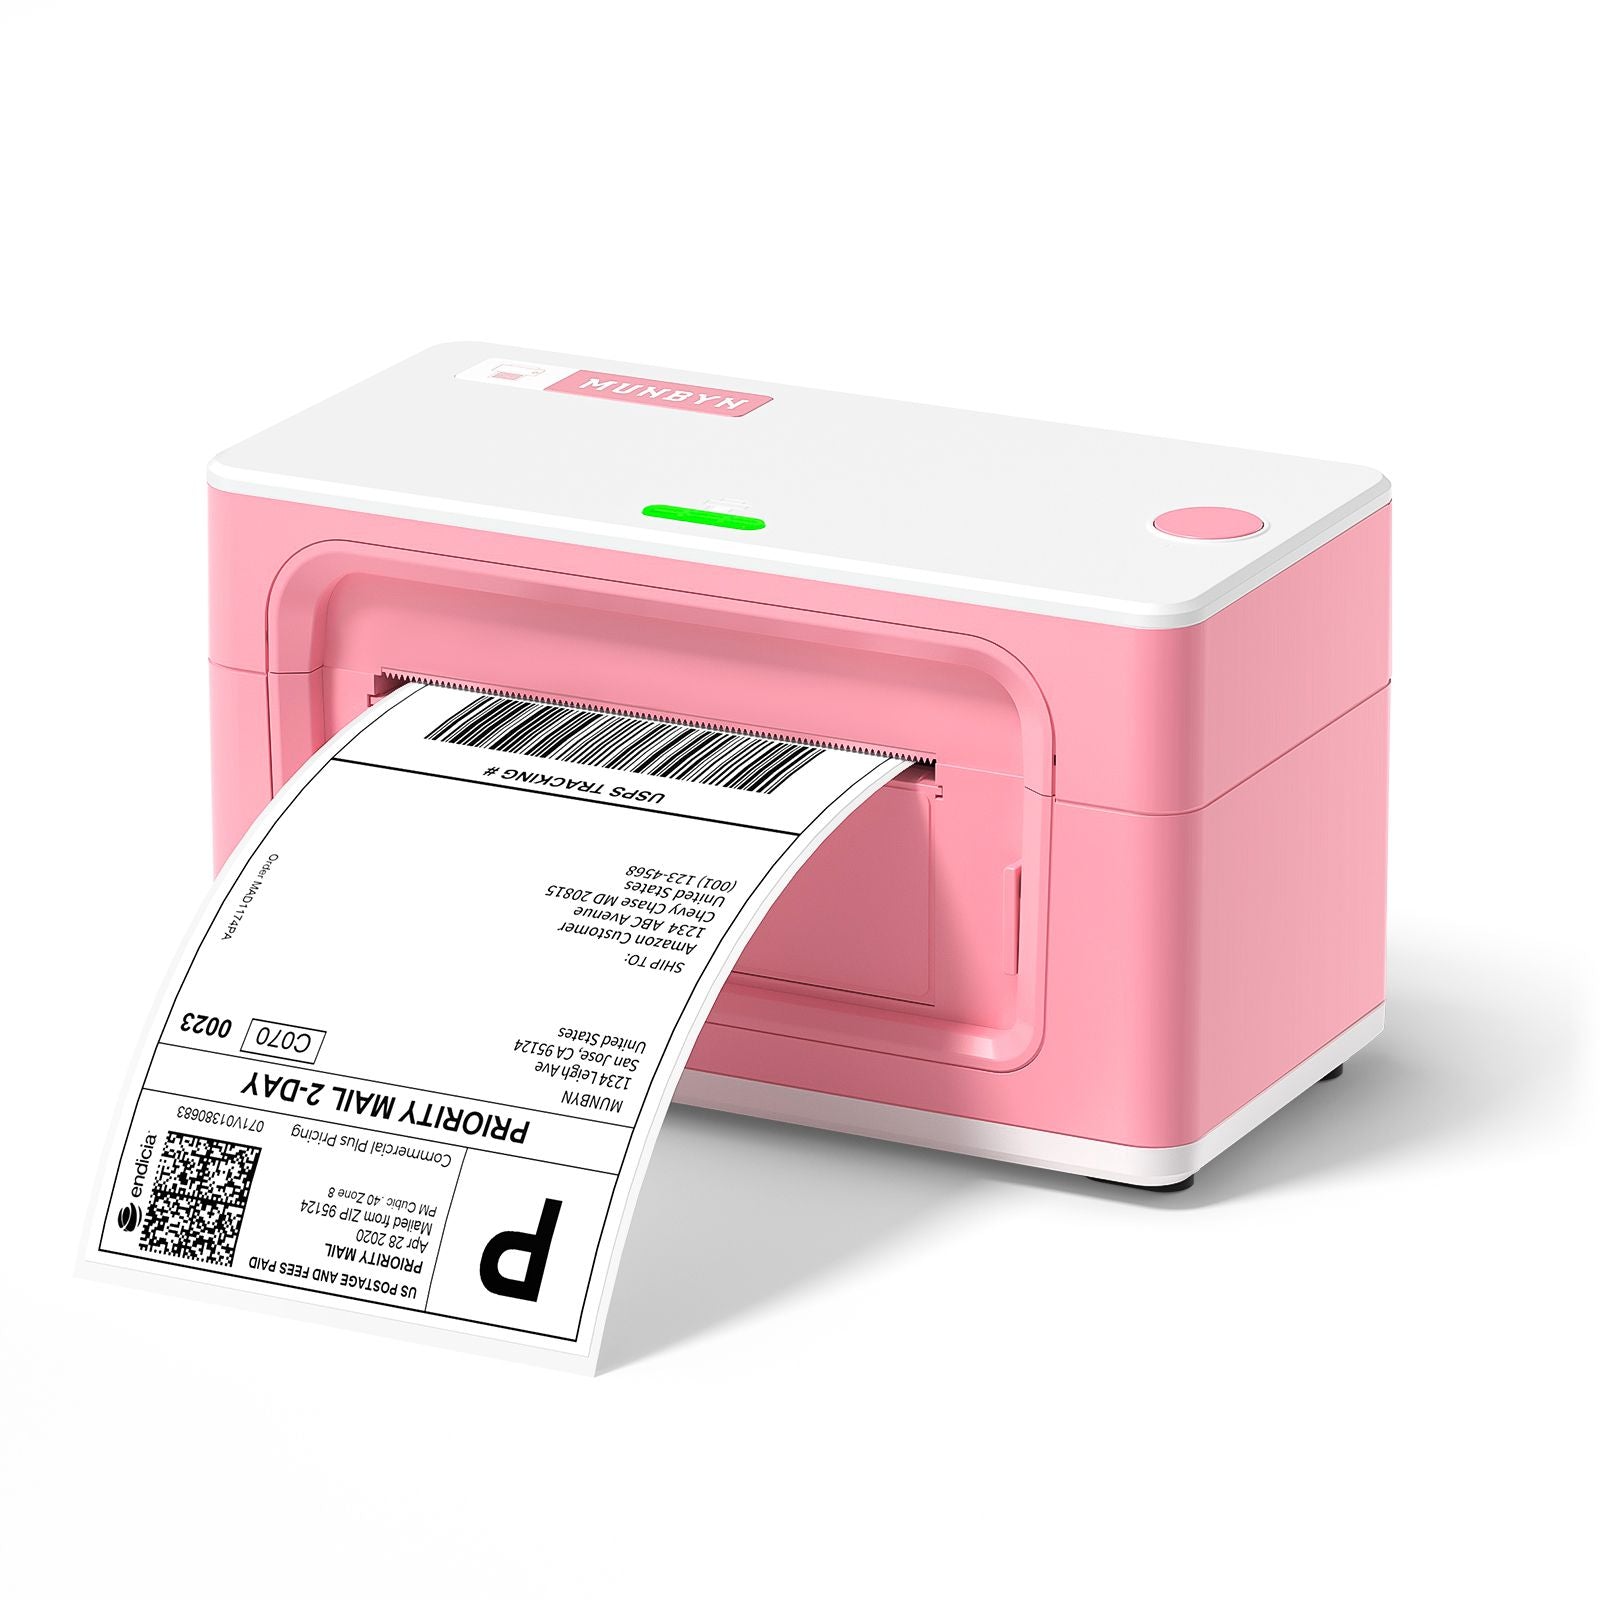 Die MUNBYN-Thermoetikettendrucker sind in vier Farben verfügbar: Rosa, Grau, Weiß und Grün.